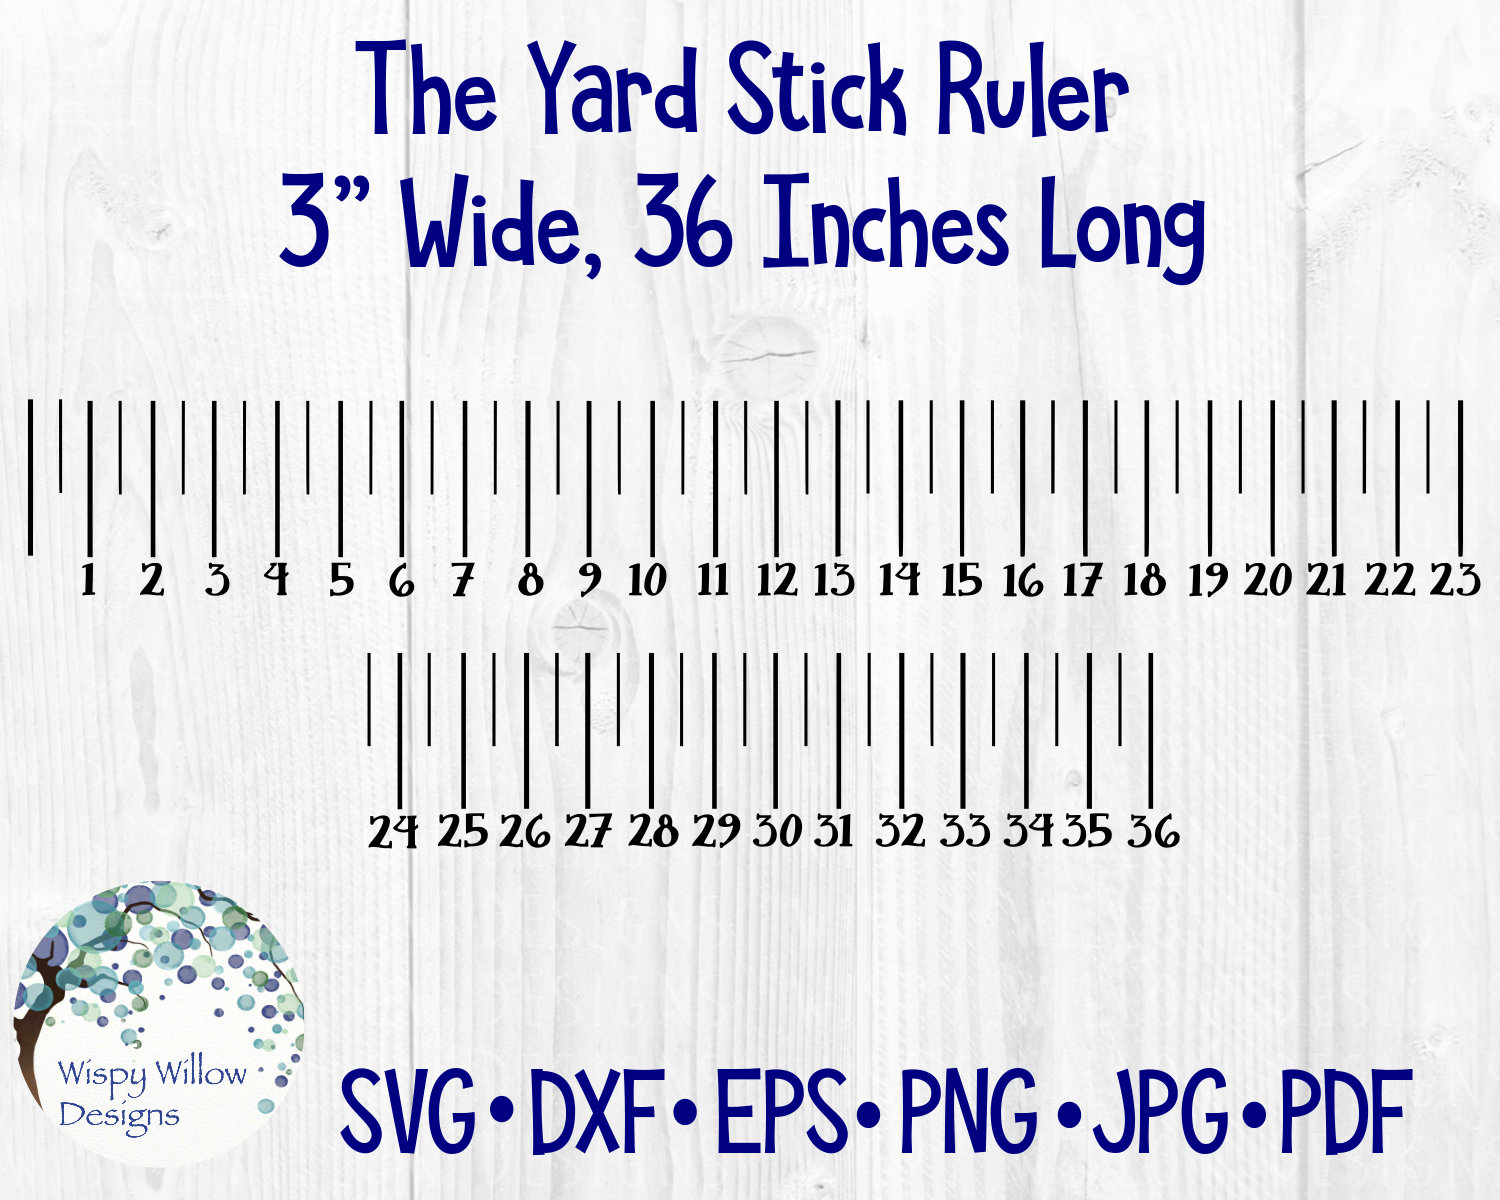 Yard Stick Ruler SVG, DXF, Png, PDF, 36 Inch Ruler Measurement